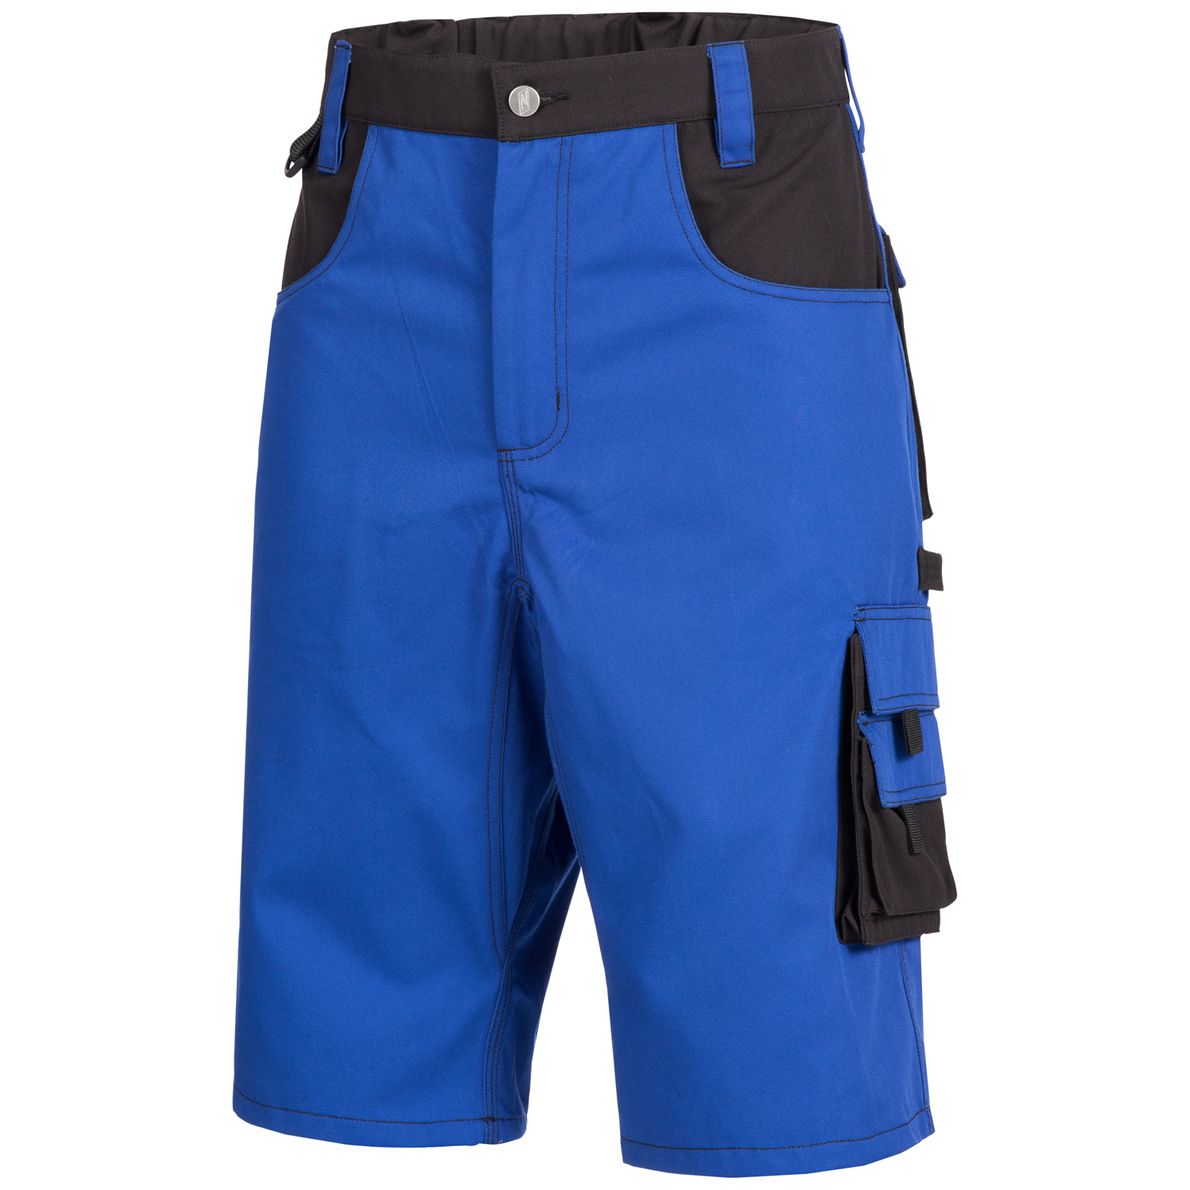 NITRAS MOTION TEX PLUS 7601 Arbeitsshorts - Shorts für die Arbeit - 35% Baumwolle - Blau - 52